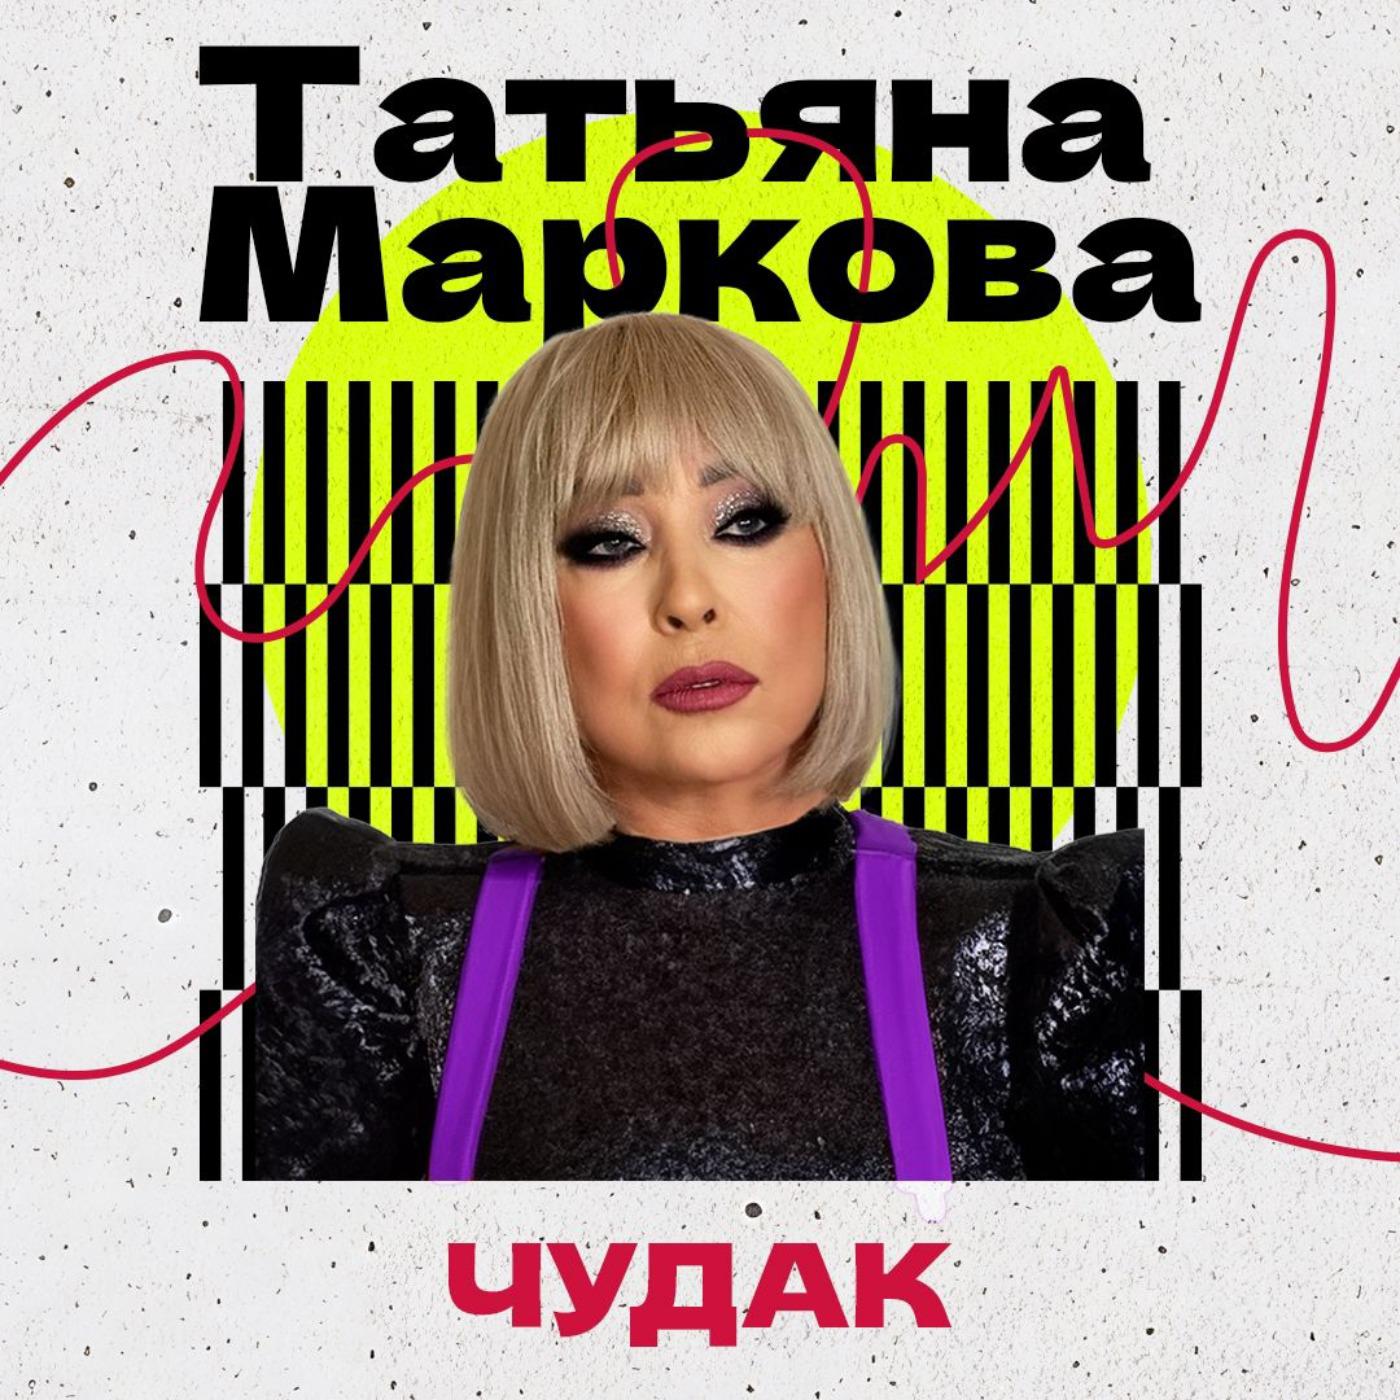 Татьяна Маркова все песни в mp3